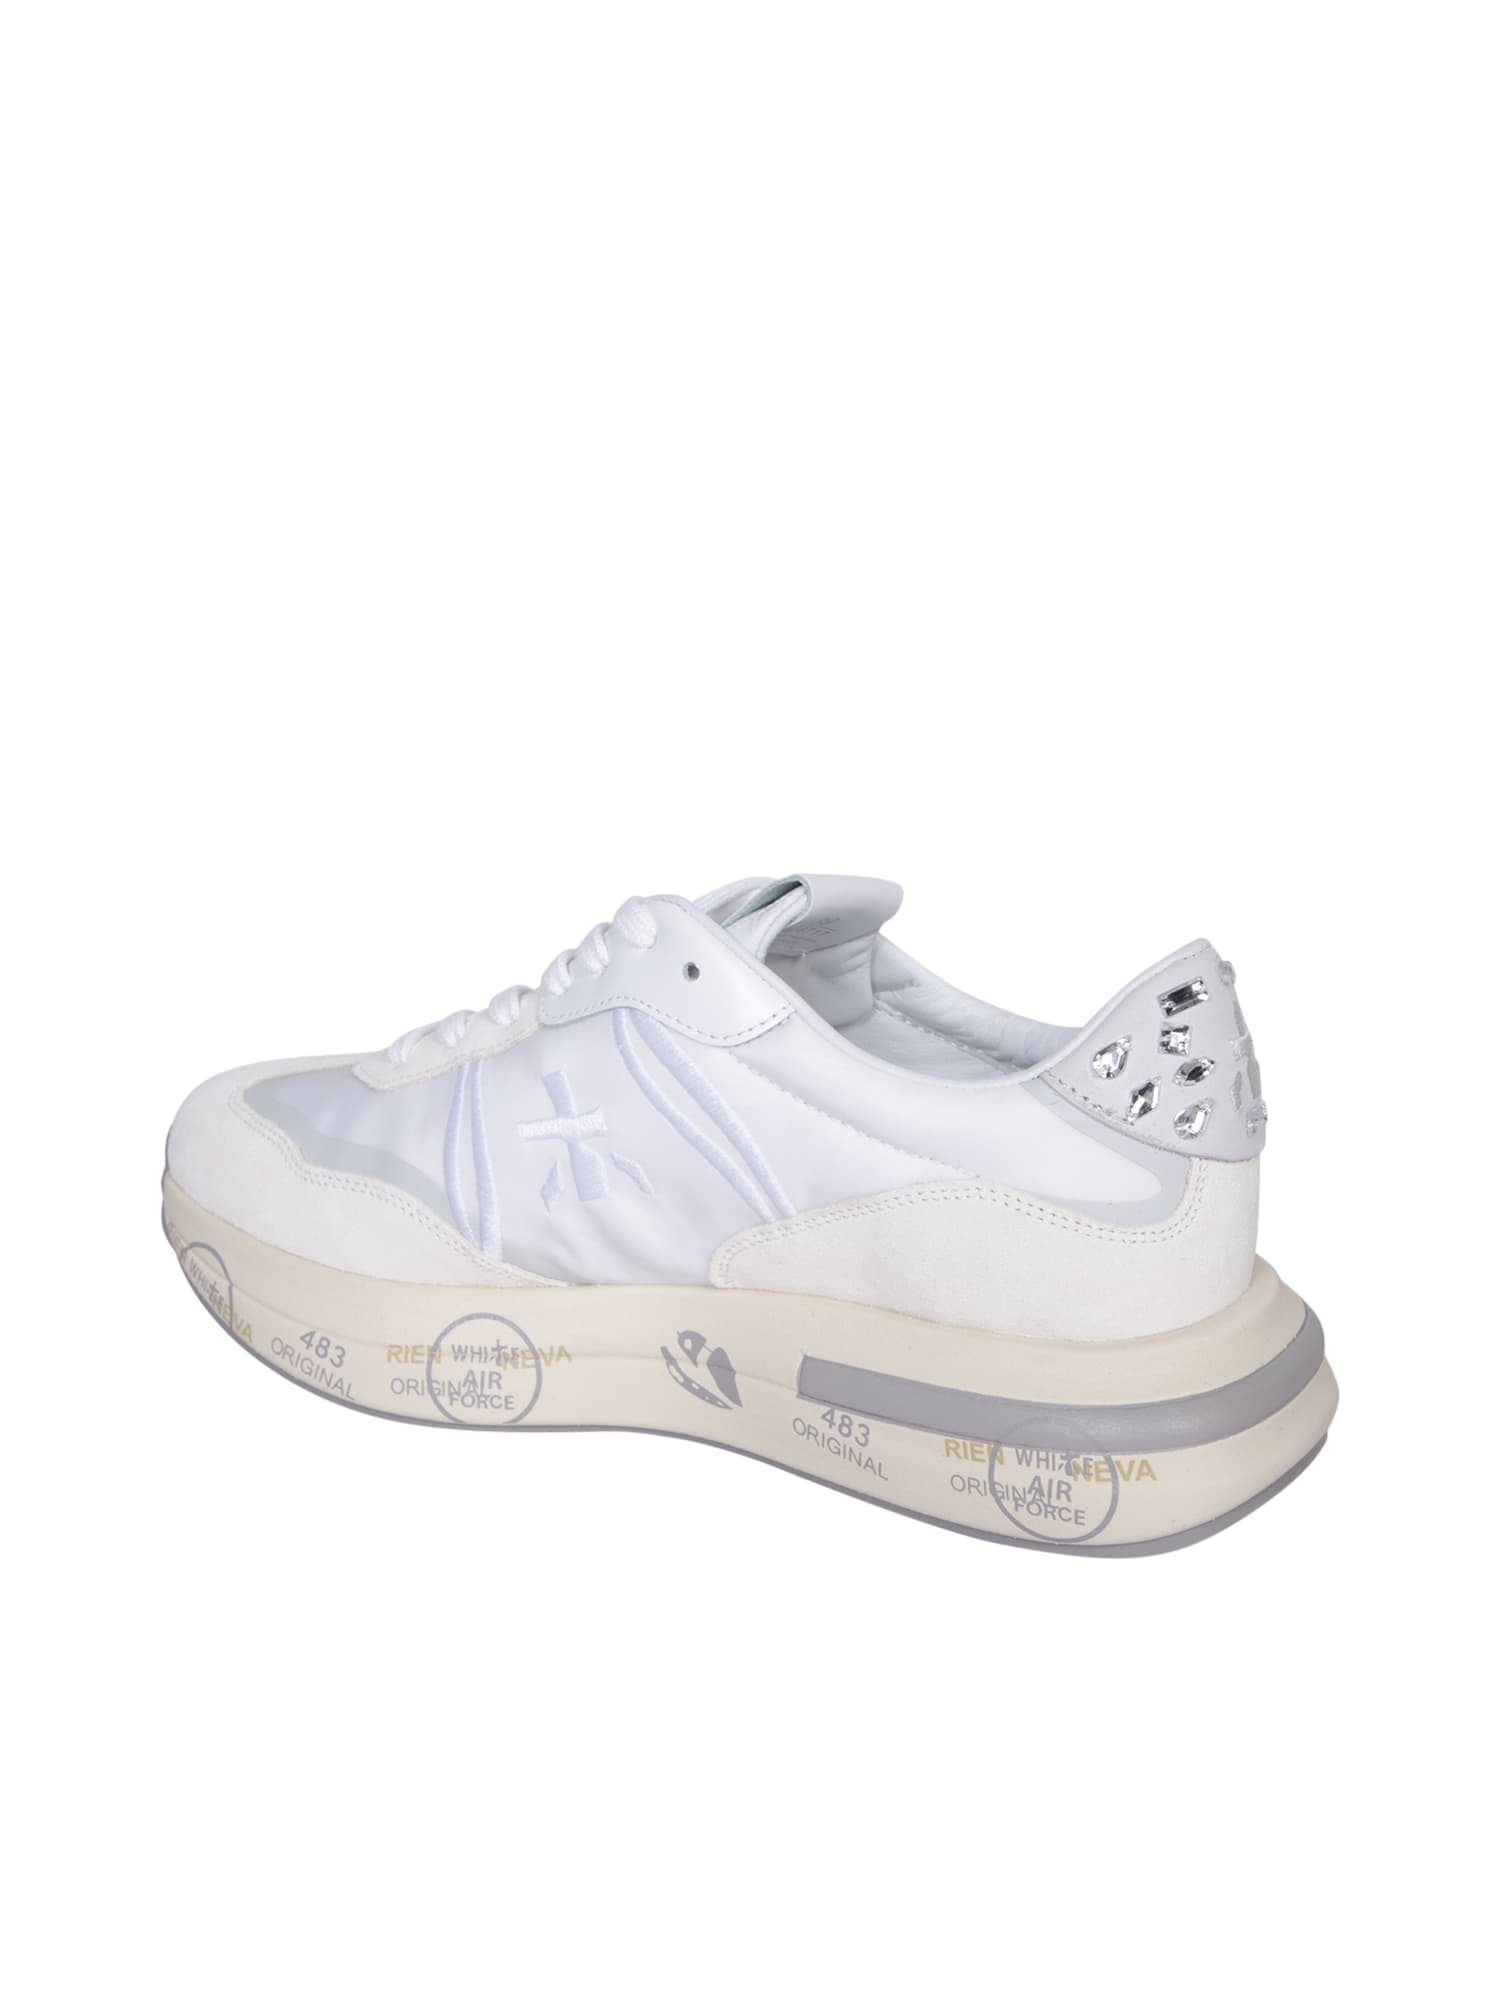 Shop Premiata Cassie White Sneakers